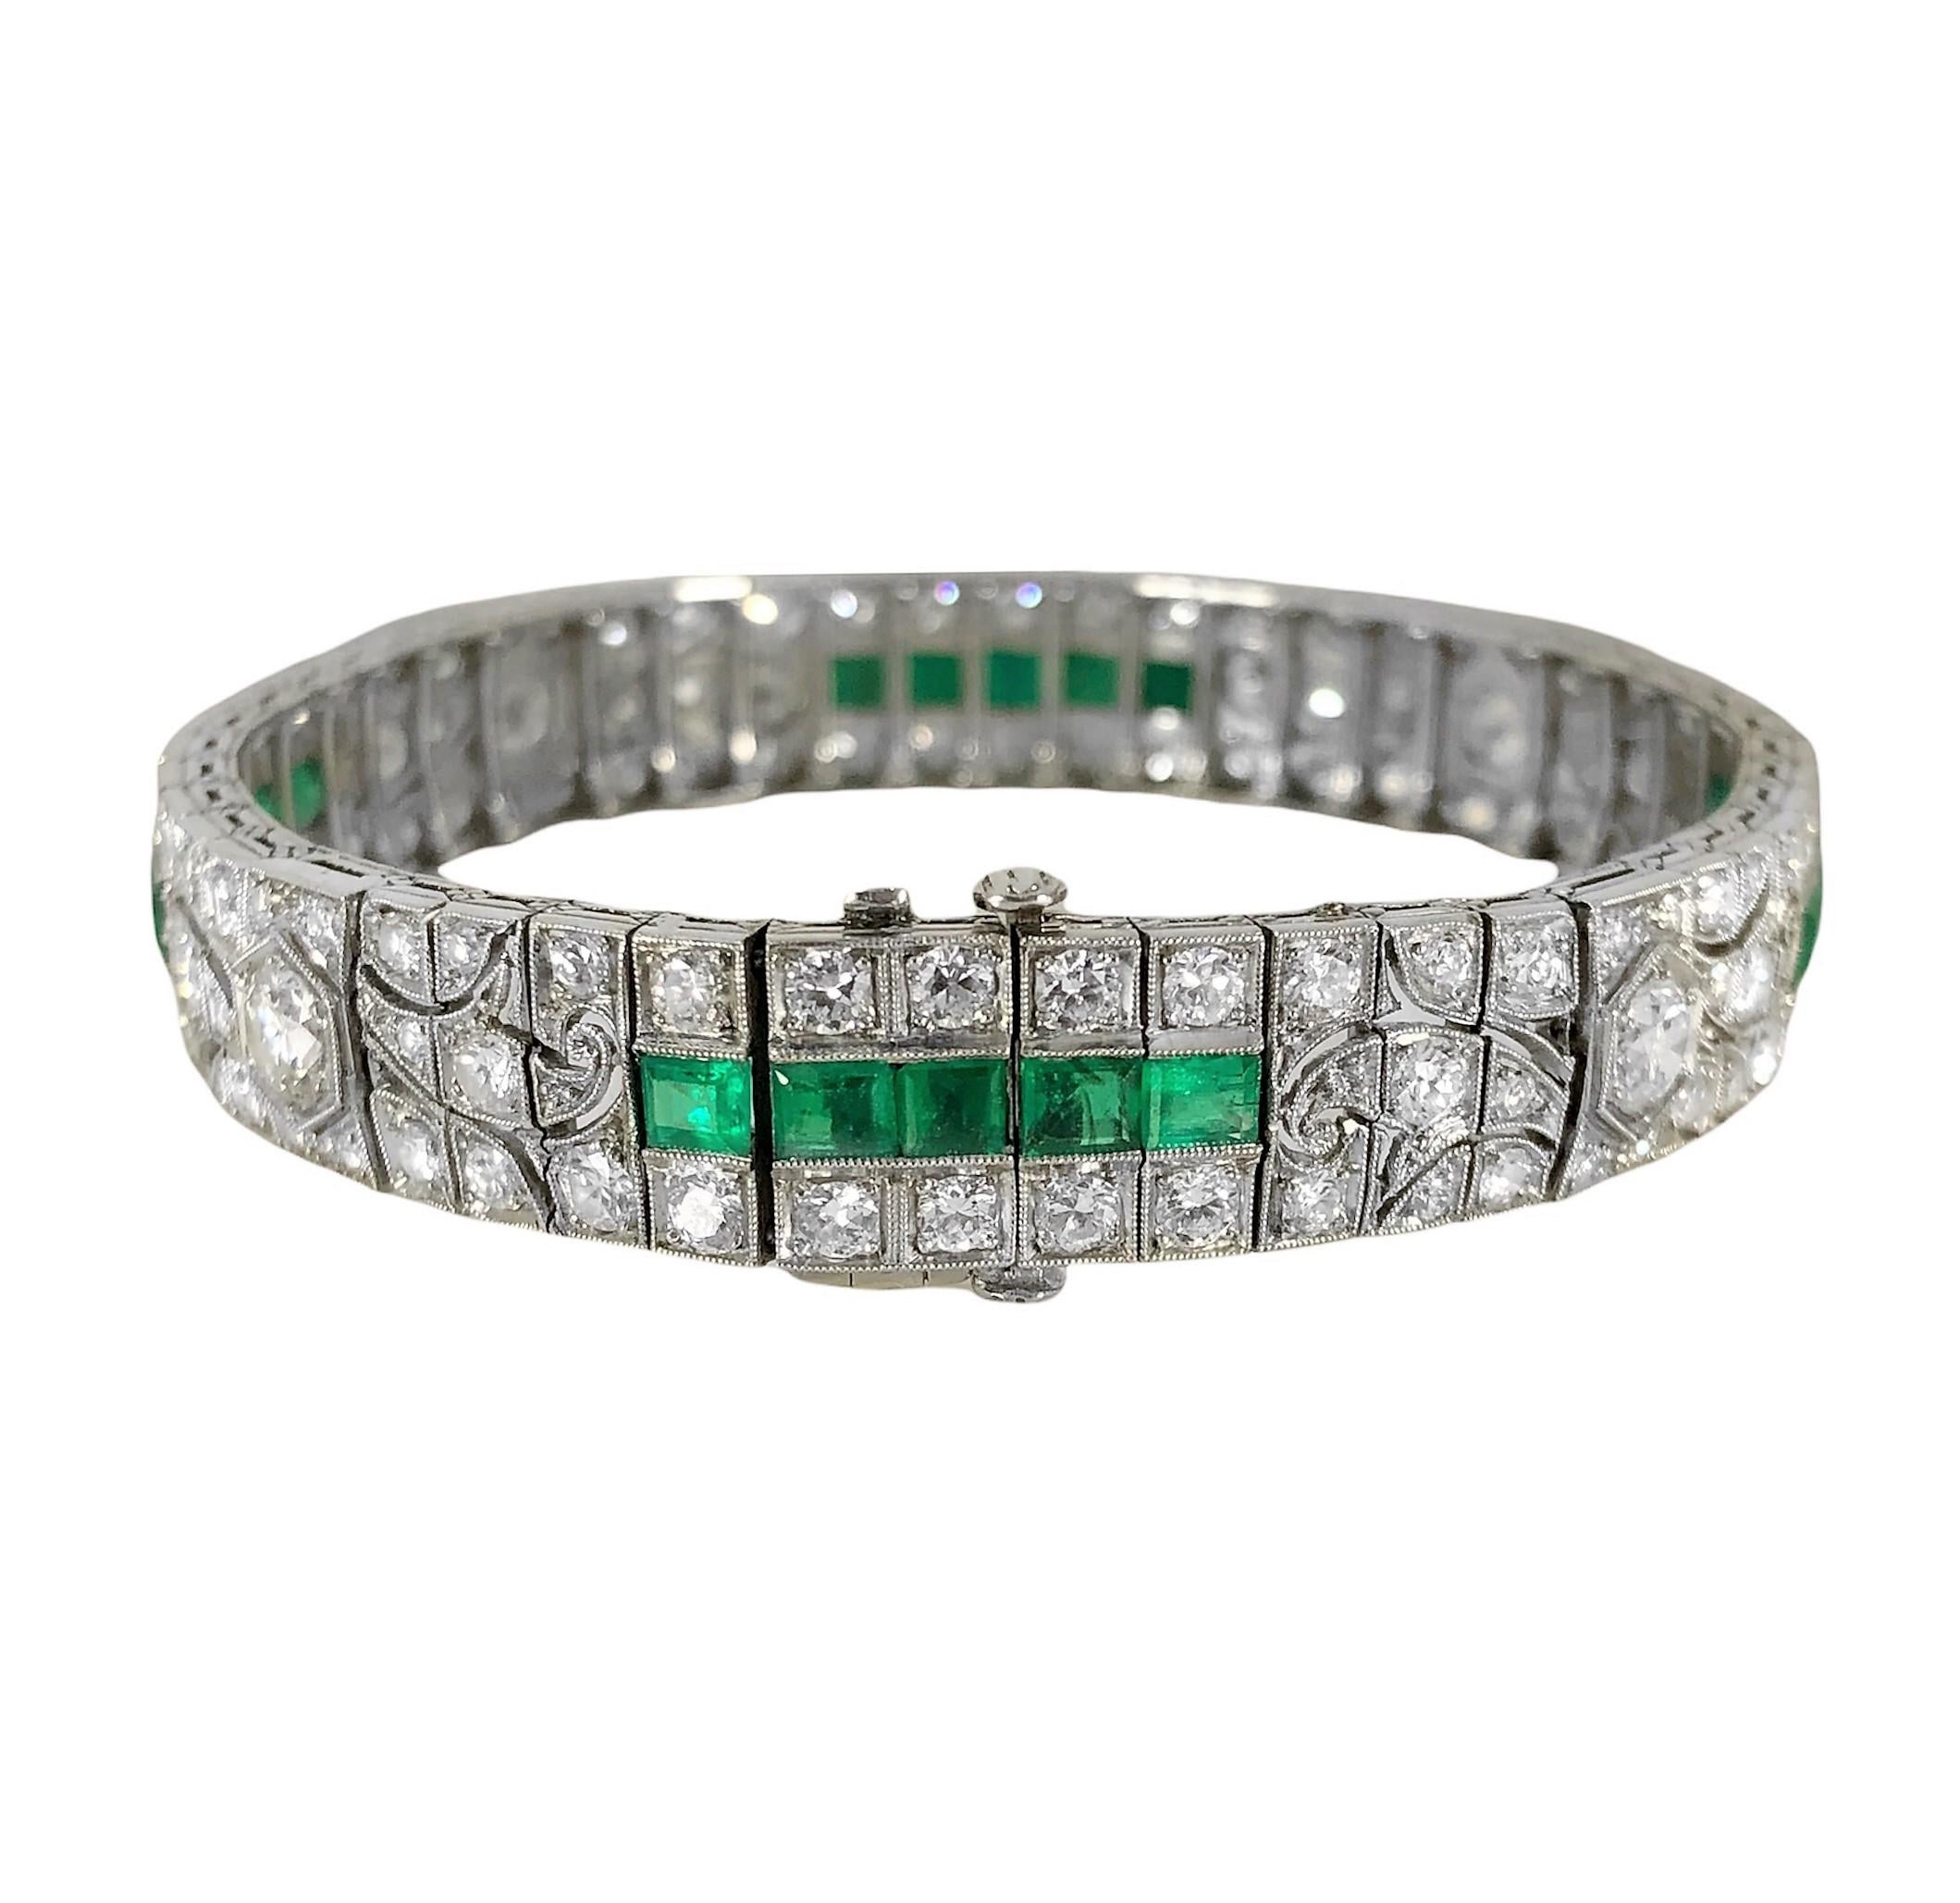 Emerald Cut Impeccable Art Deco Diamond and Emerald Bracelet